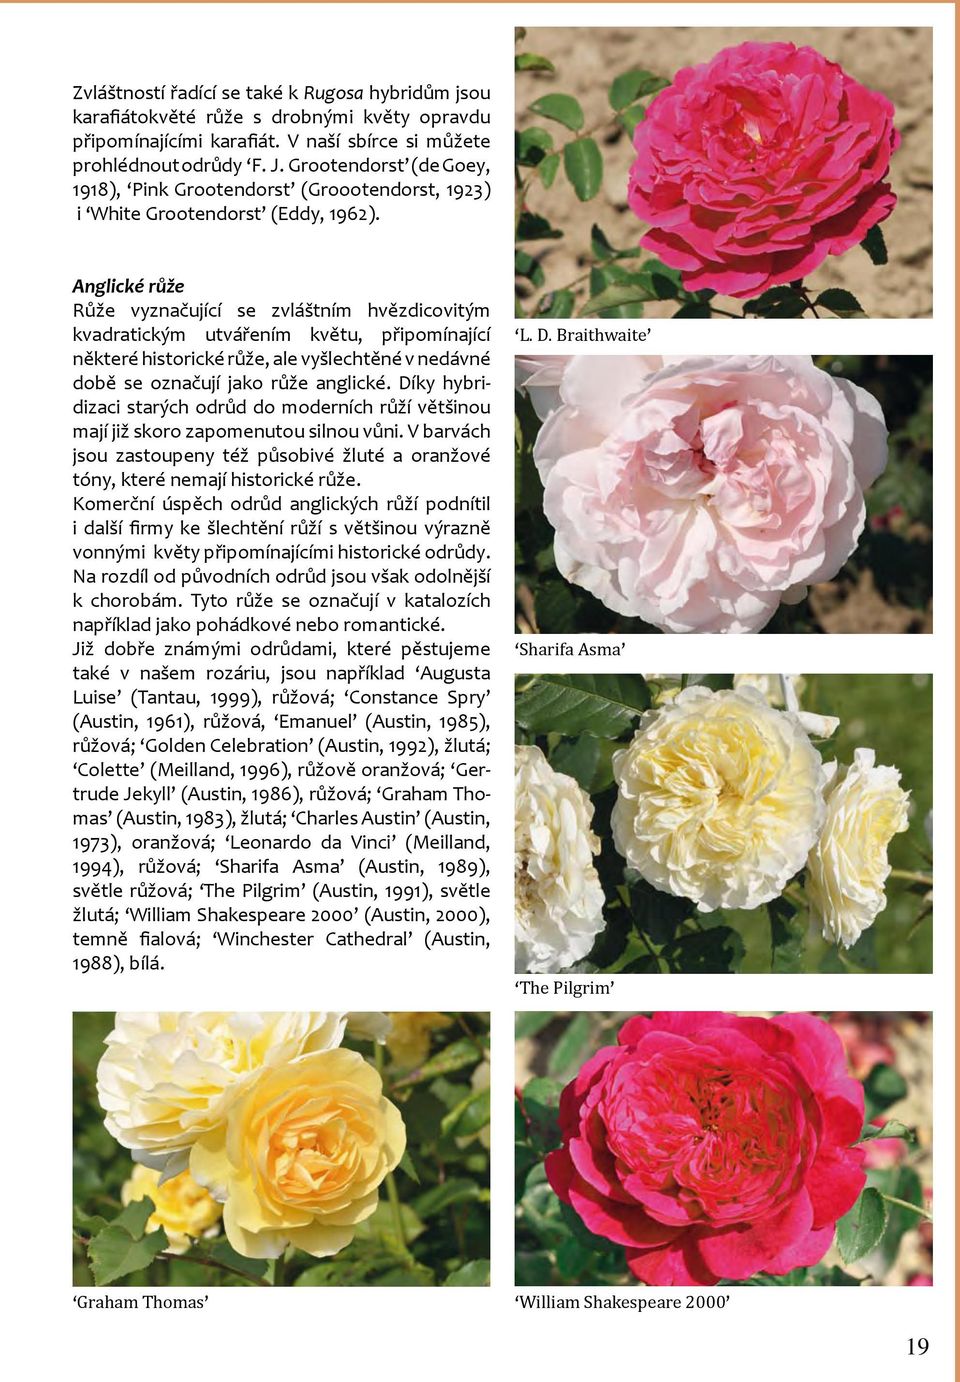 Anglické růže Růže vyznačující se zvláštním hvězdicovitým kvadratickým utvářením květu, připomínající některé historické růže, ale vyšlechtěné v nedávné době se označují jako růže anglické.